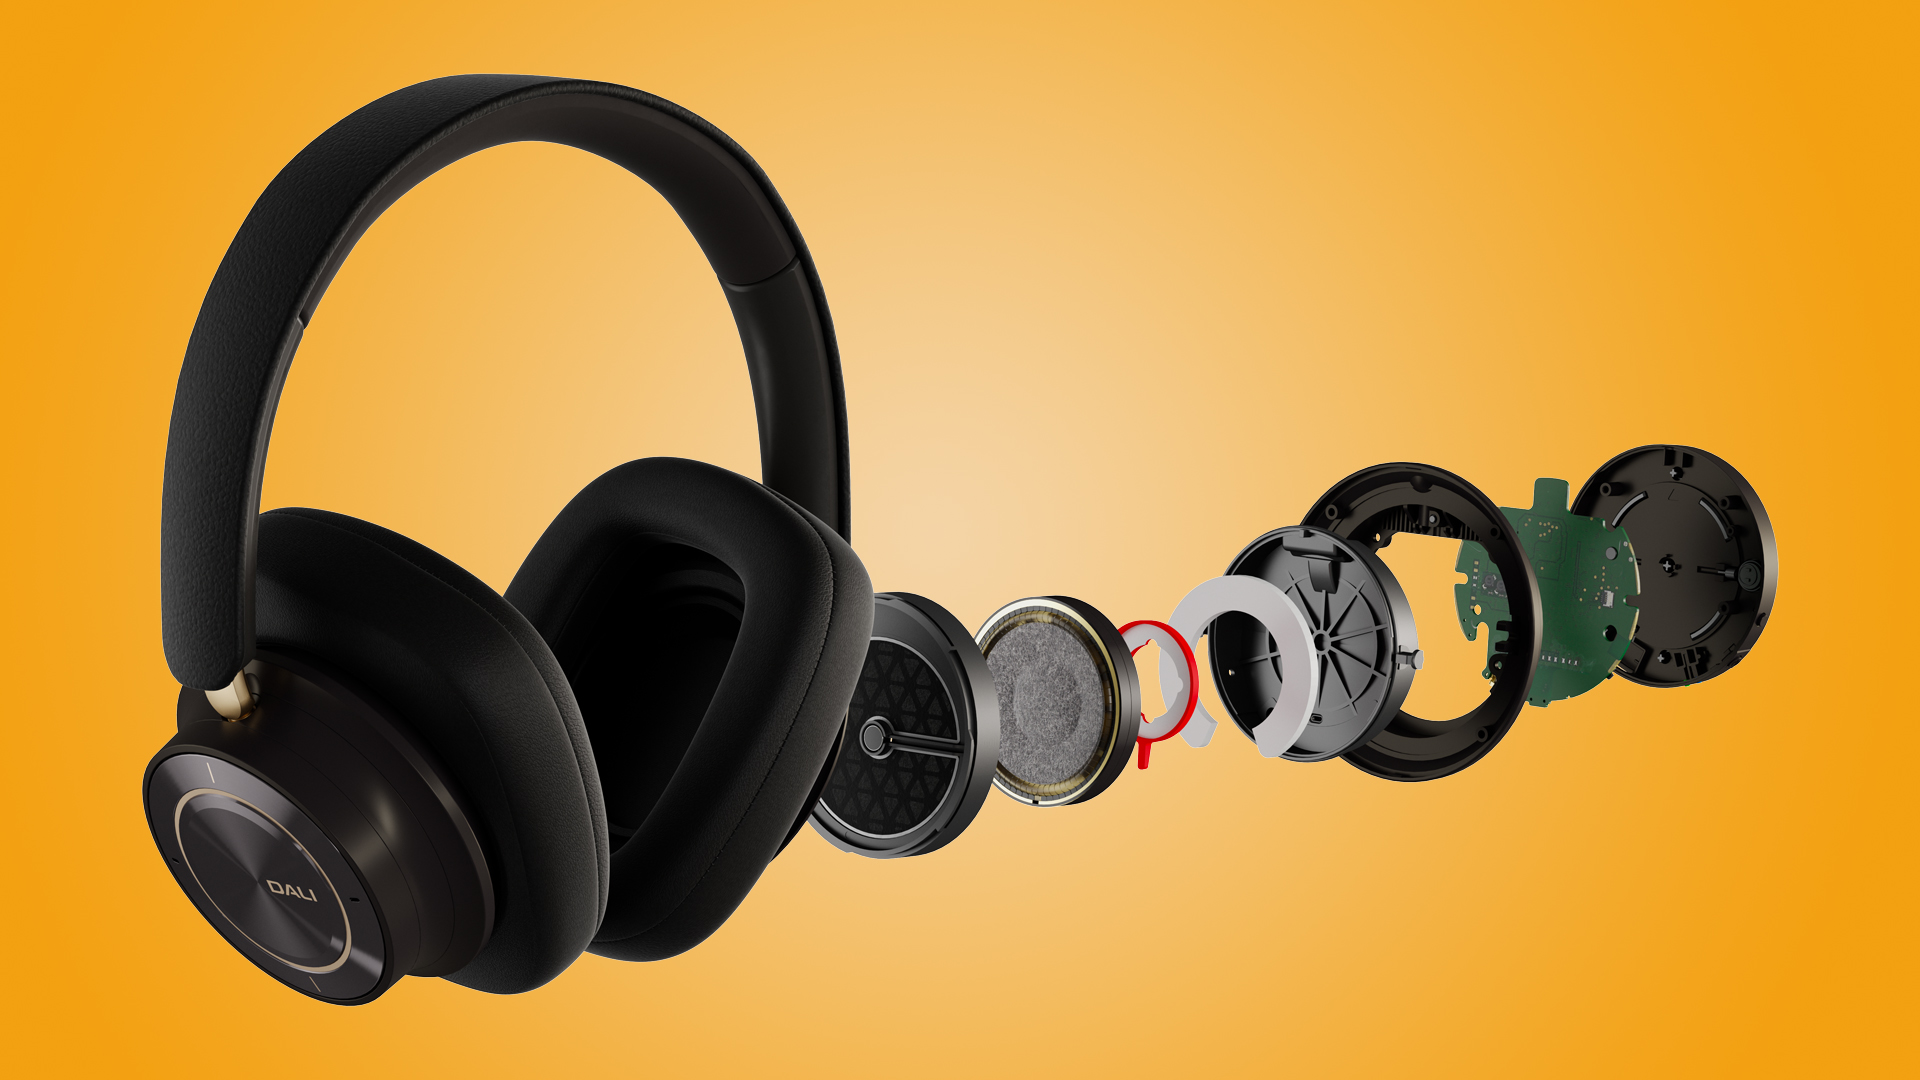 Dali IO-12 headphones against orange background